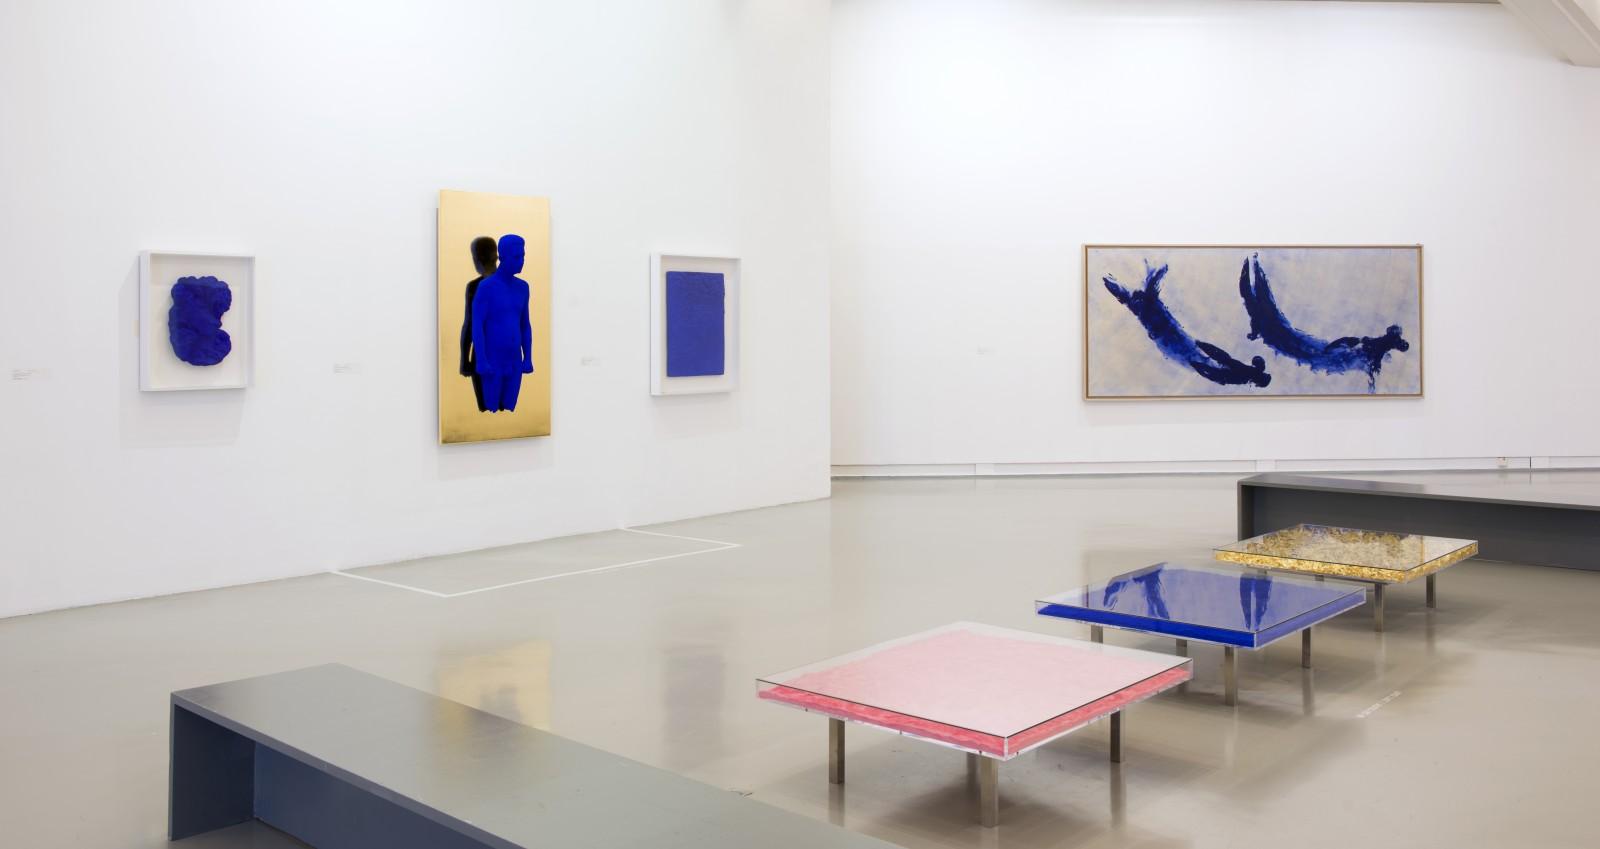 Vue de l'exposition "Collectors", MAMAC - Musée d'Art Moderne et d'Art Contemporain de Nice, 2015 (ANT 84, PR 3, RP 4, RP 10)